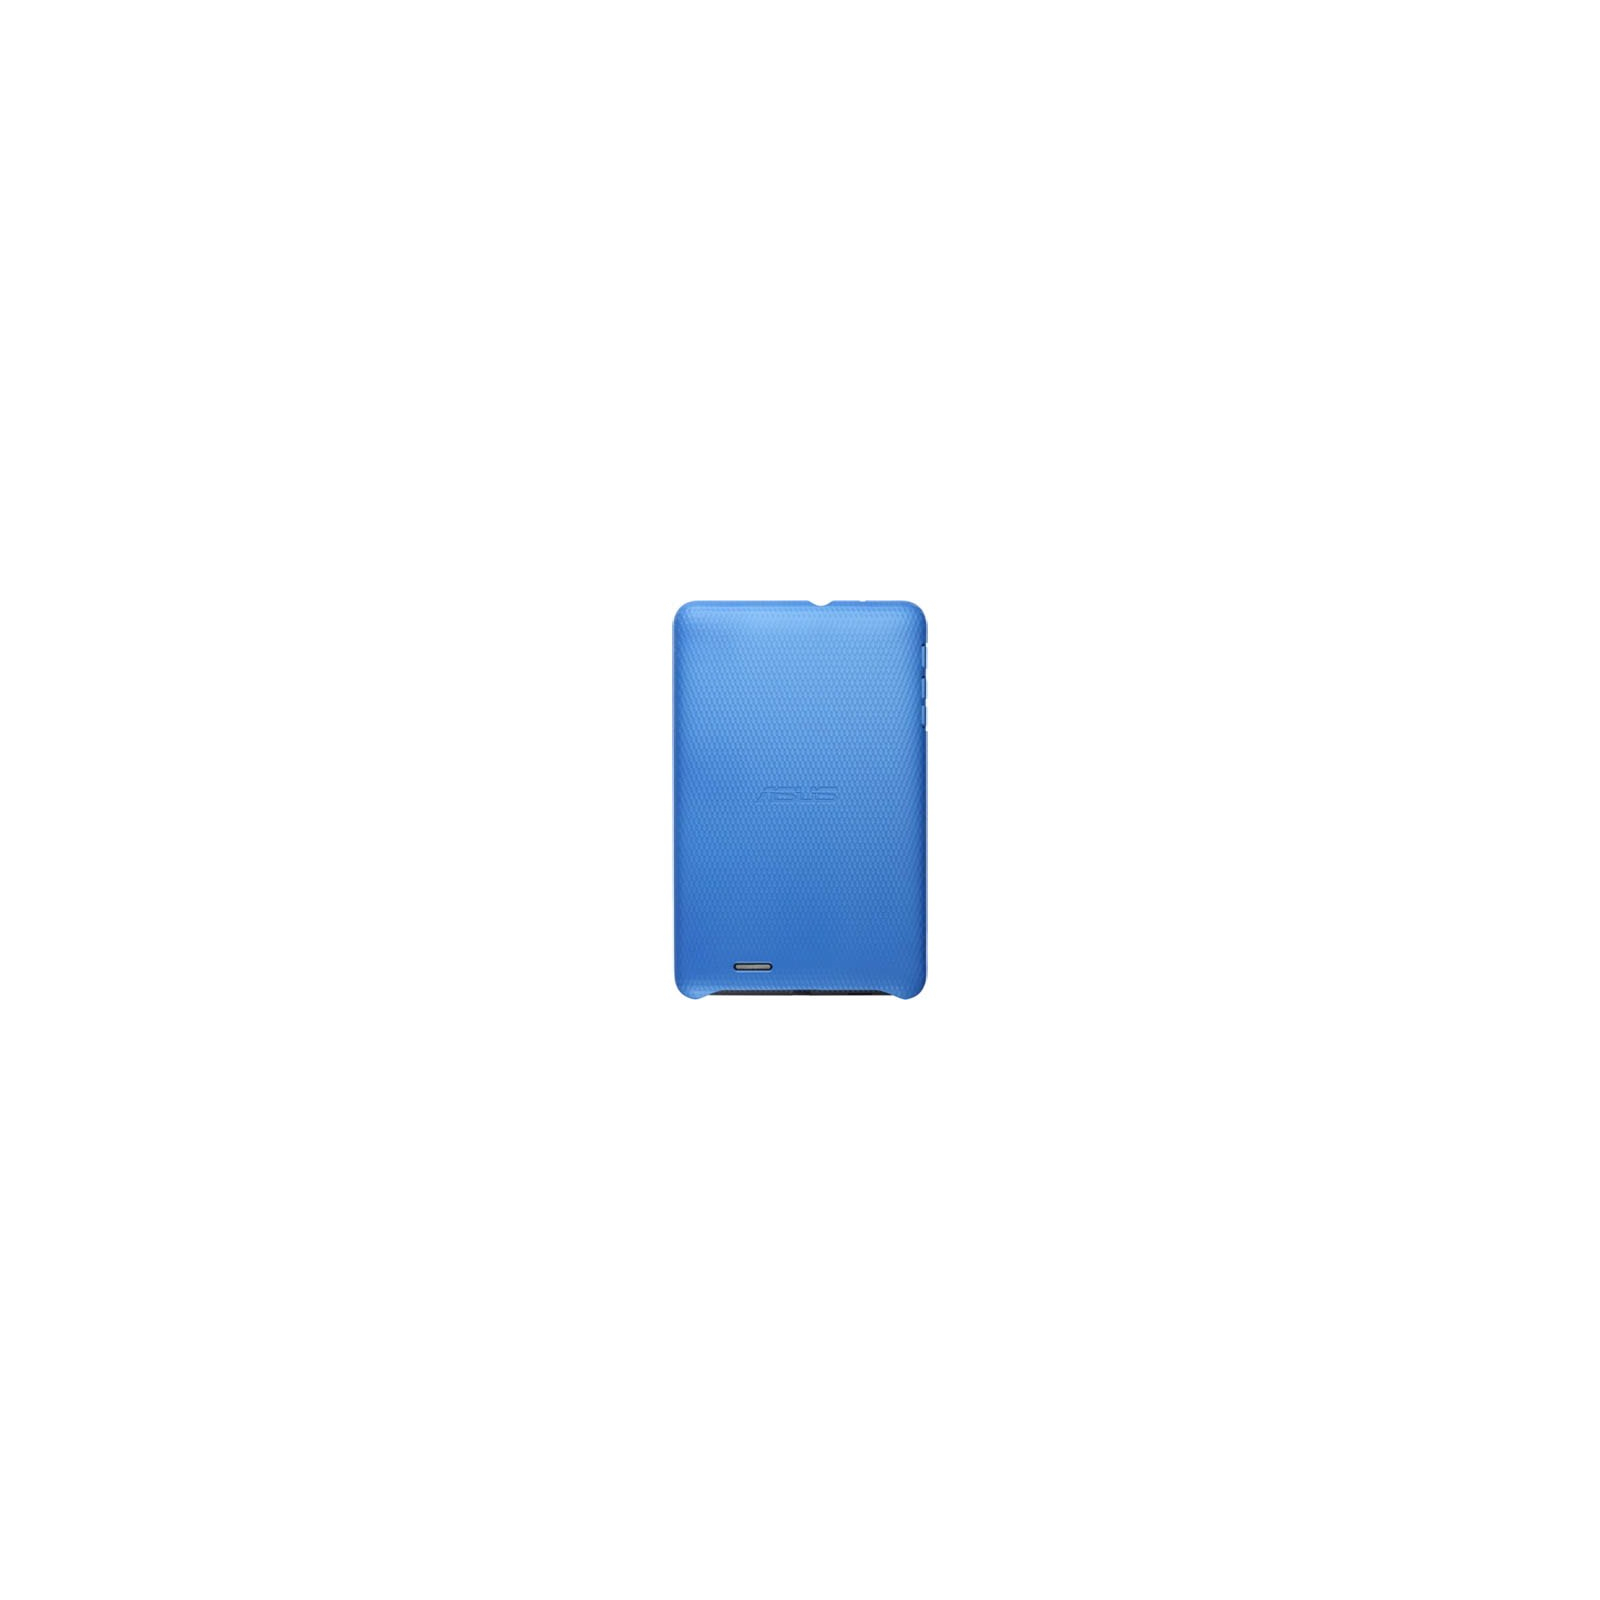 Чехол для планшета ASUS 7 ME172 SPECTRUM COVER BLUE (90-XB3TOKSL001H0-)